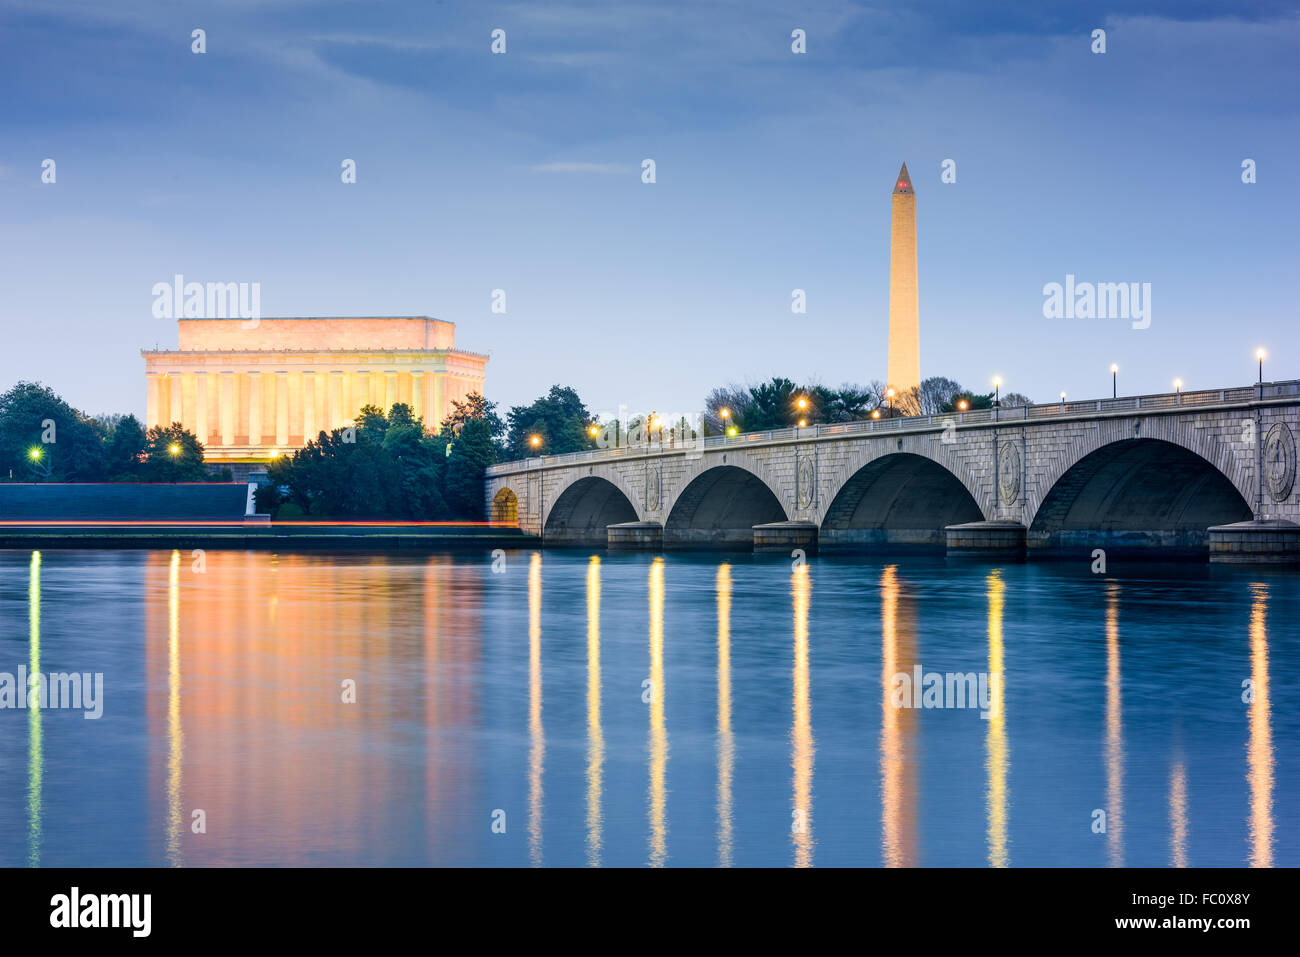 Washington DC, EE.UU., el horizonte sobre el río Potomac con el Lincoln Memorial, el Monumento a Washington, y el Arlington Memorial Bridge. Foto de stock